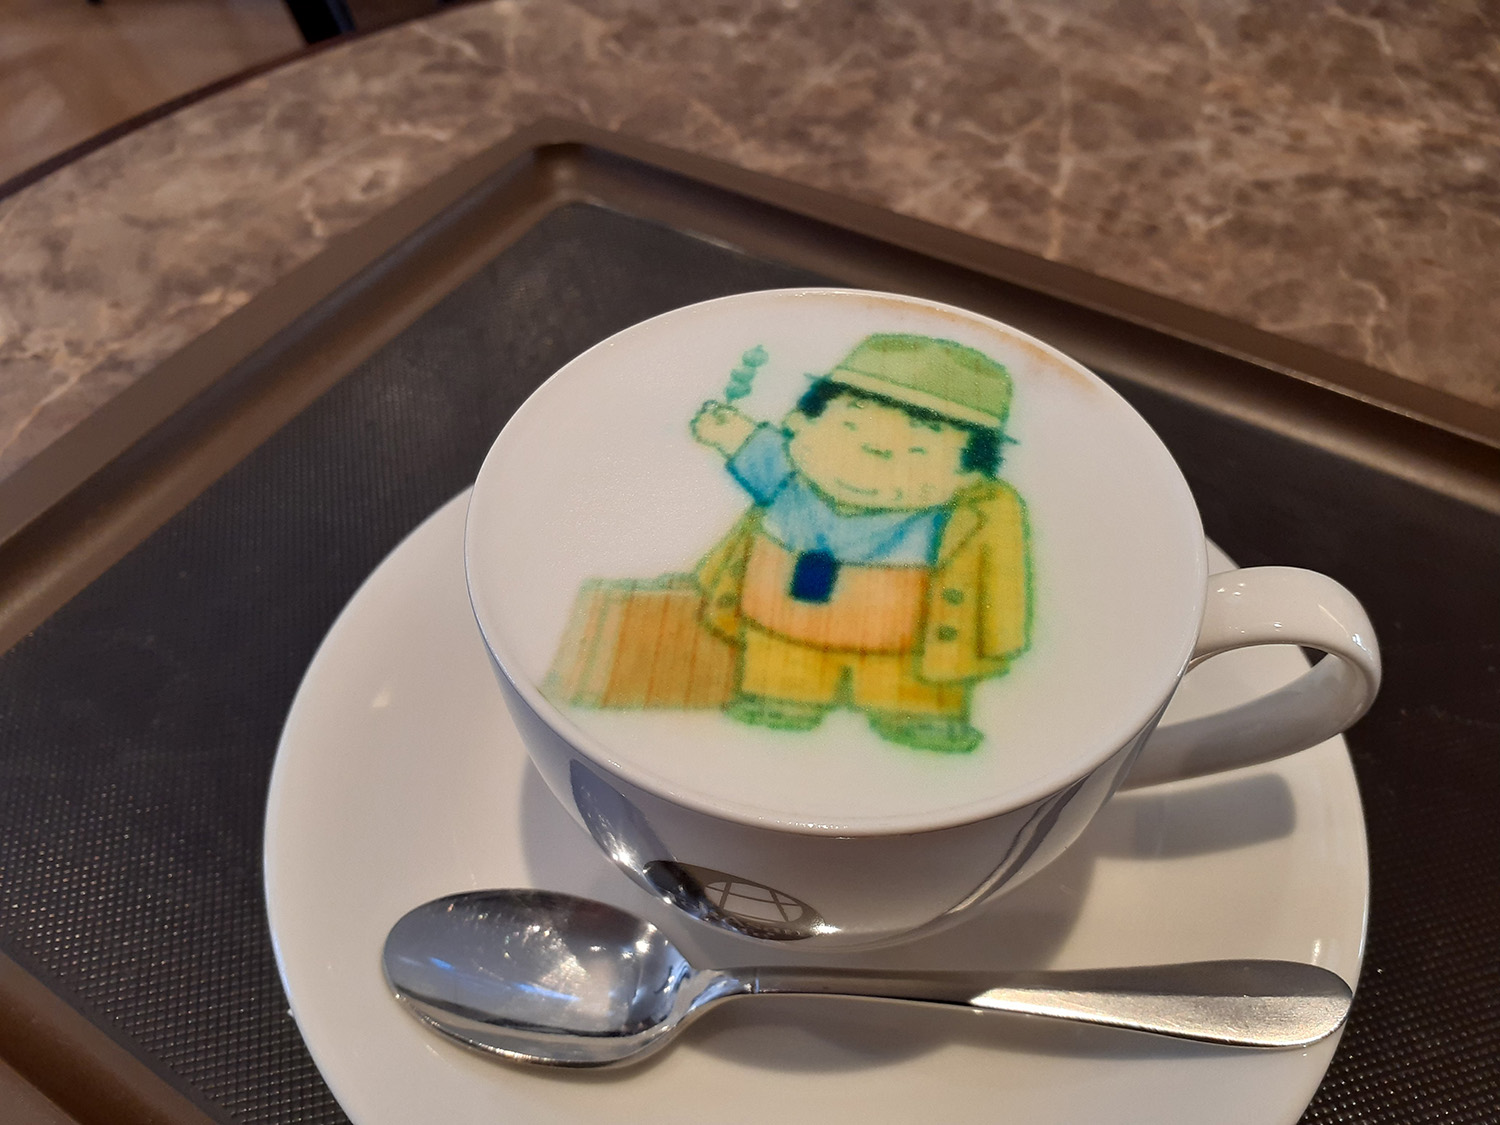 《「くるまやカフェ」ありそなメニュー》葛飾柴又寅さん記念館内の『TORA San Cafe』名物の「TORAチーノ」(660円)。高井研一郎版寅さんイラストのラテアートが楽しめる。でも三平ちゃんの趣味じゃなさそう。